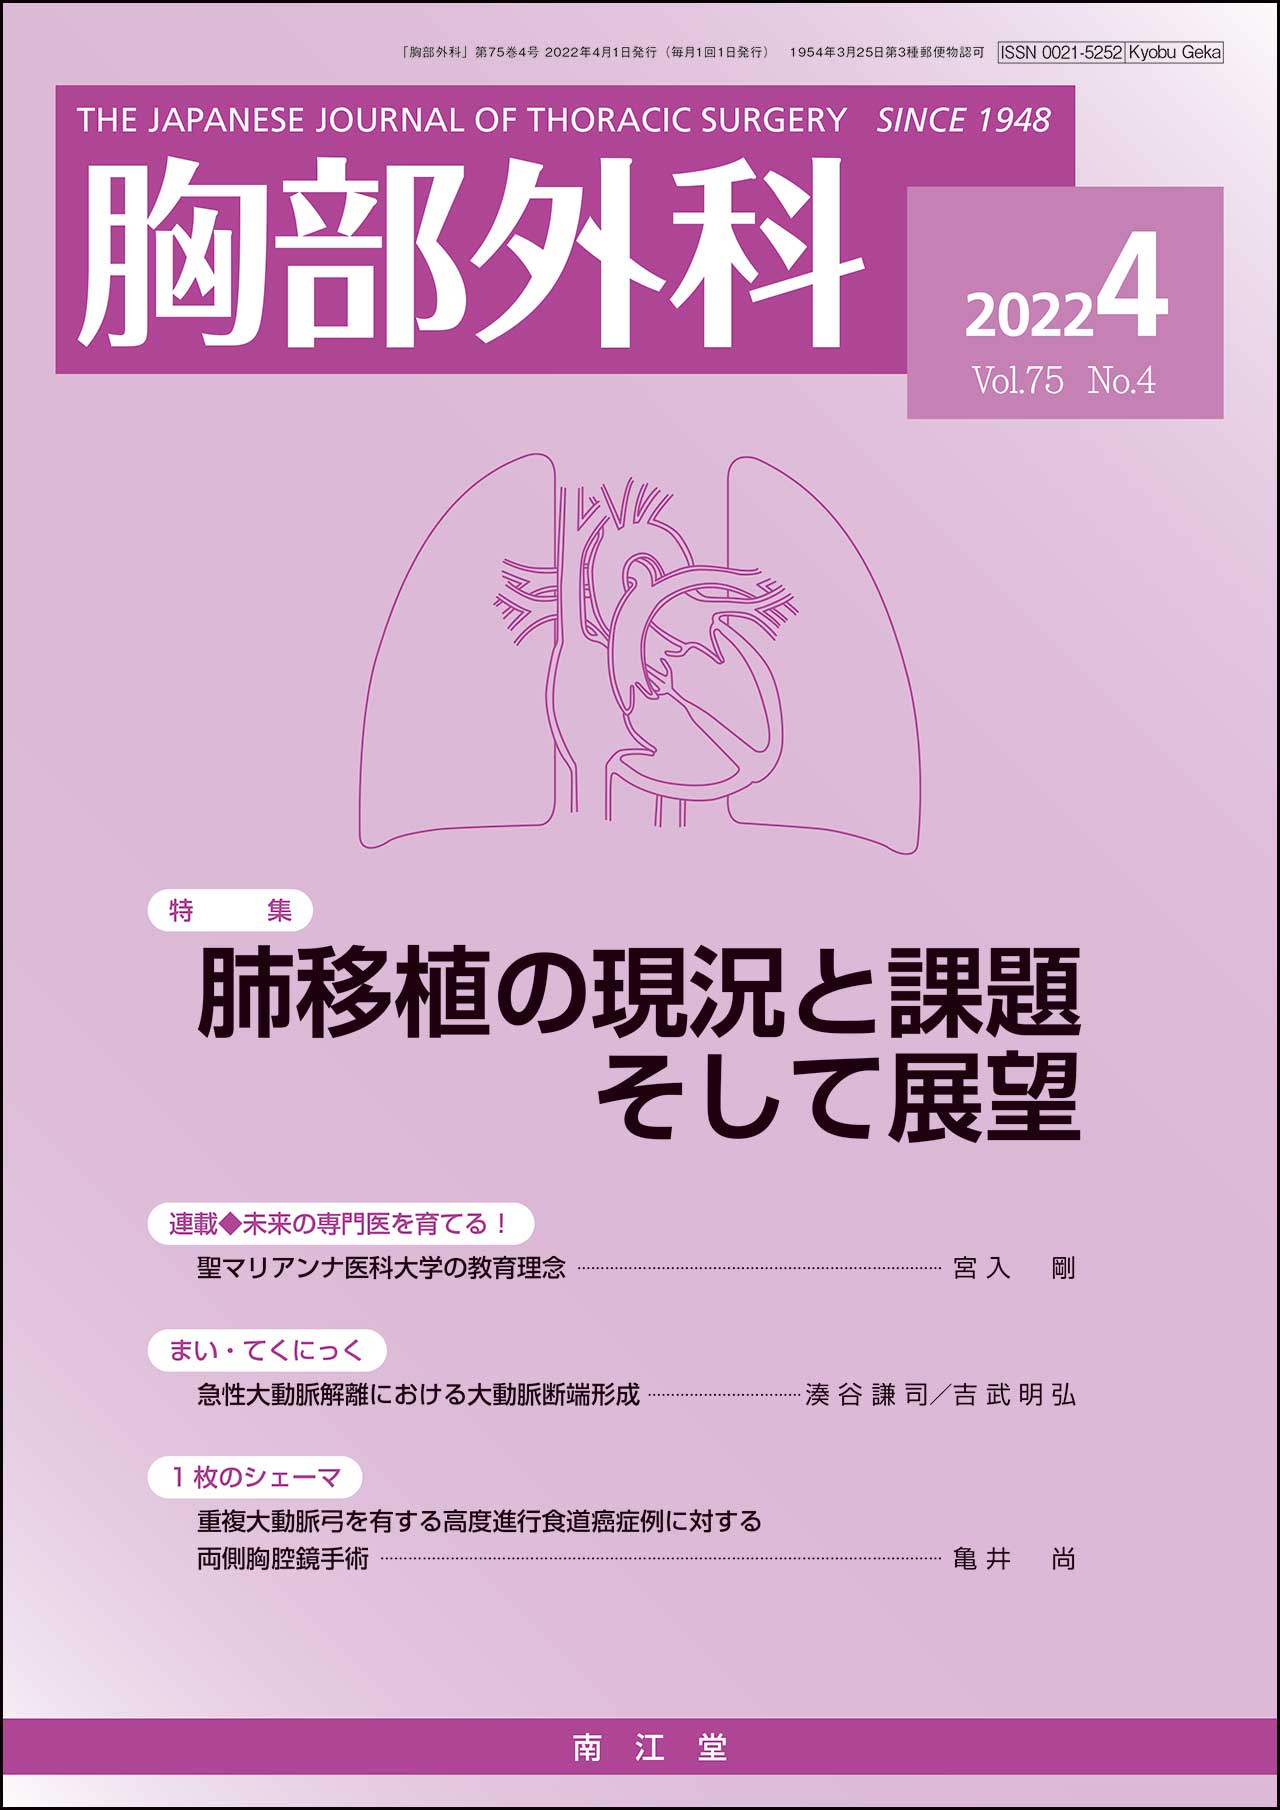 肺移植の現況と課題そして展望(Vol.75 No.4)2022年4月号